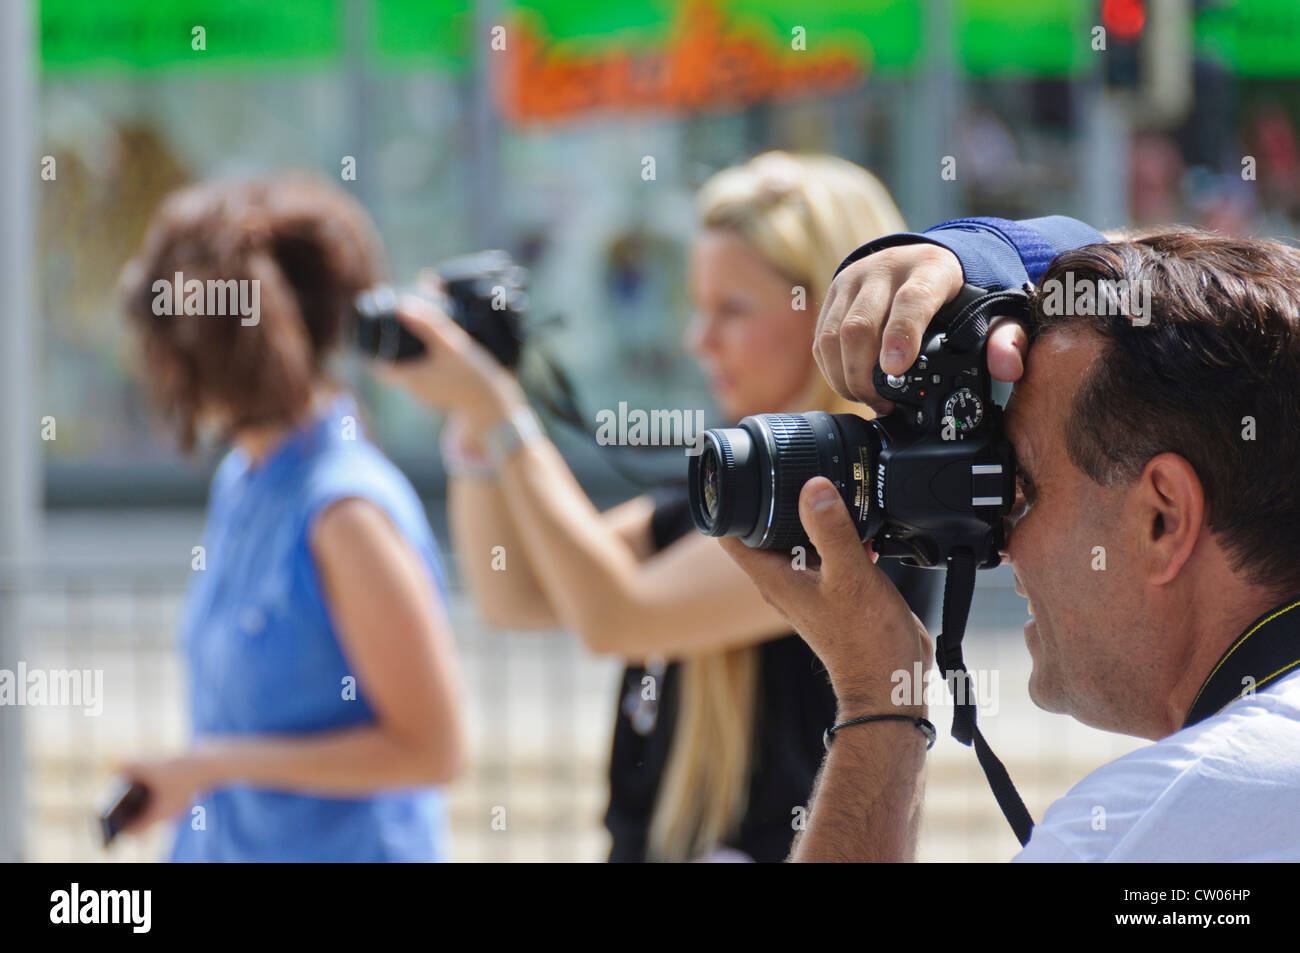 3 fotografi, 1 maschio 2 femmina, scattare foto durante un evento pubblico con Nikon DSLR digitale reflex a lente singola telecamera Foto Stock